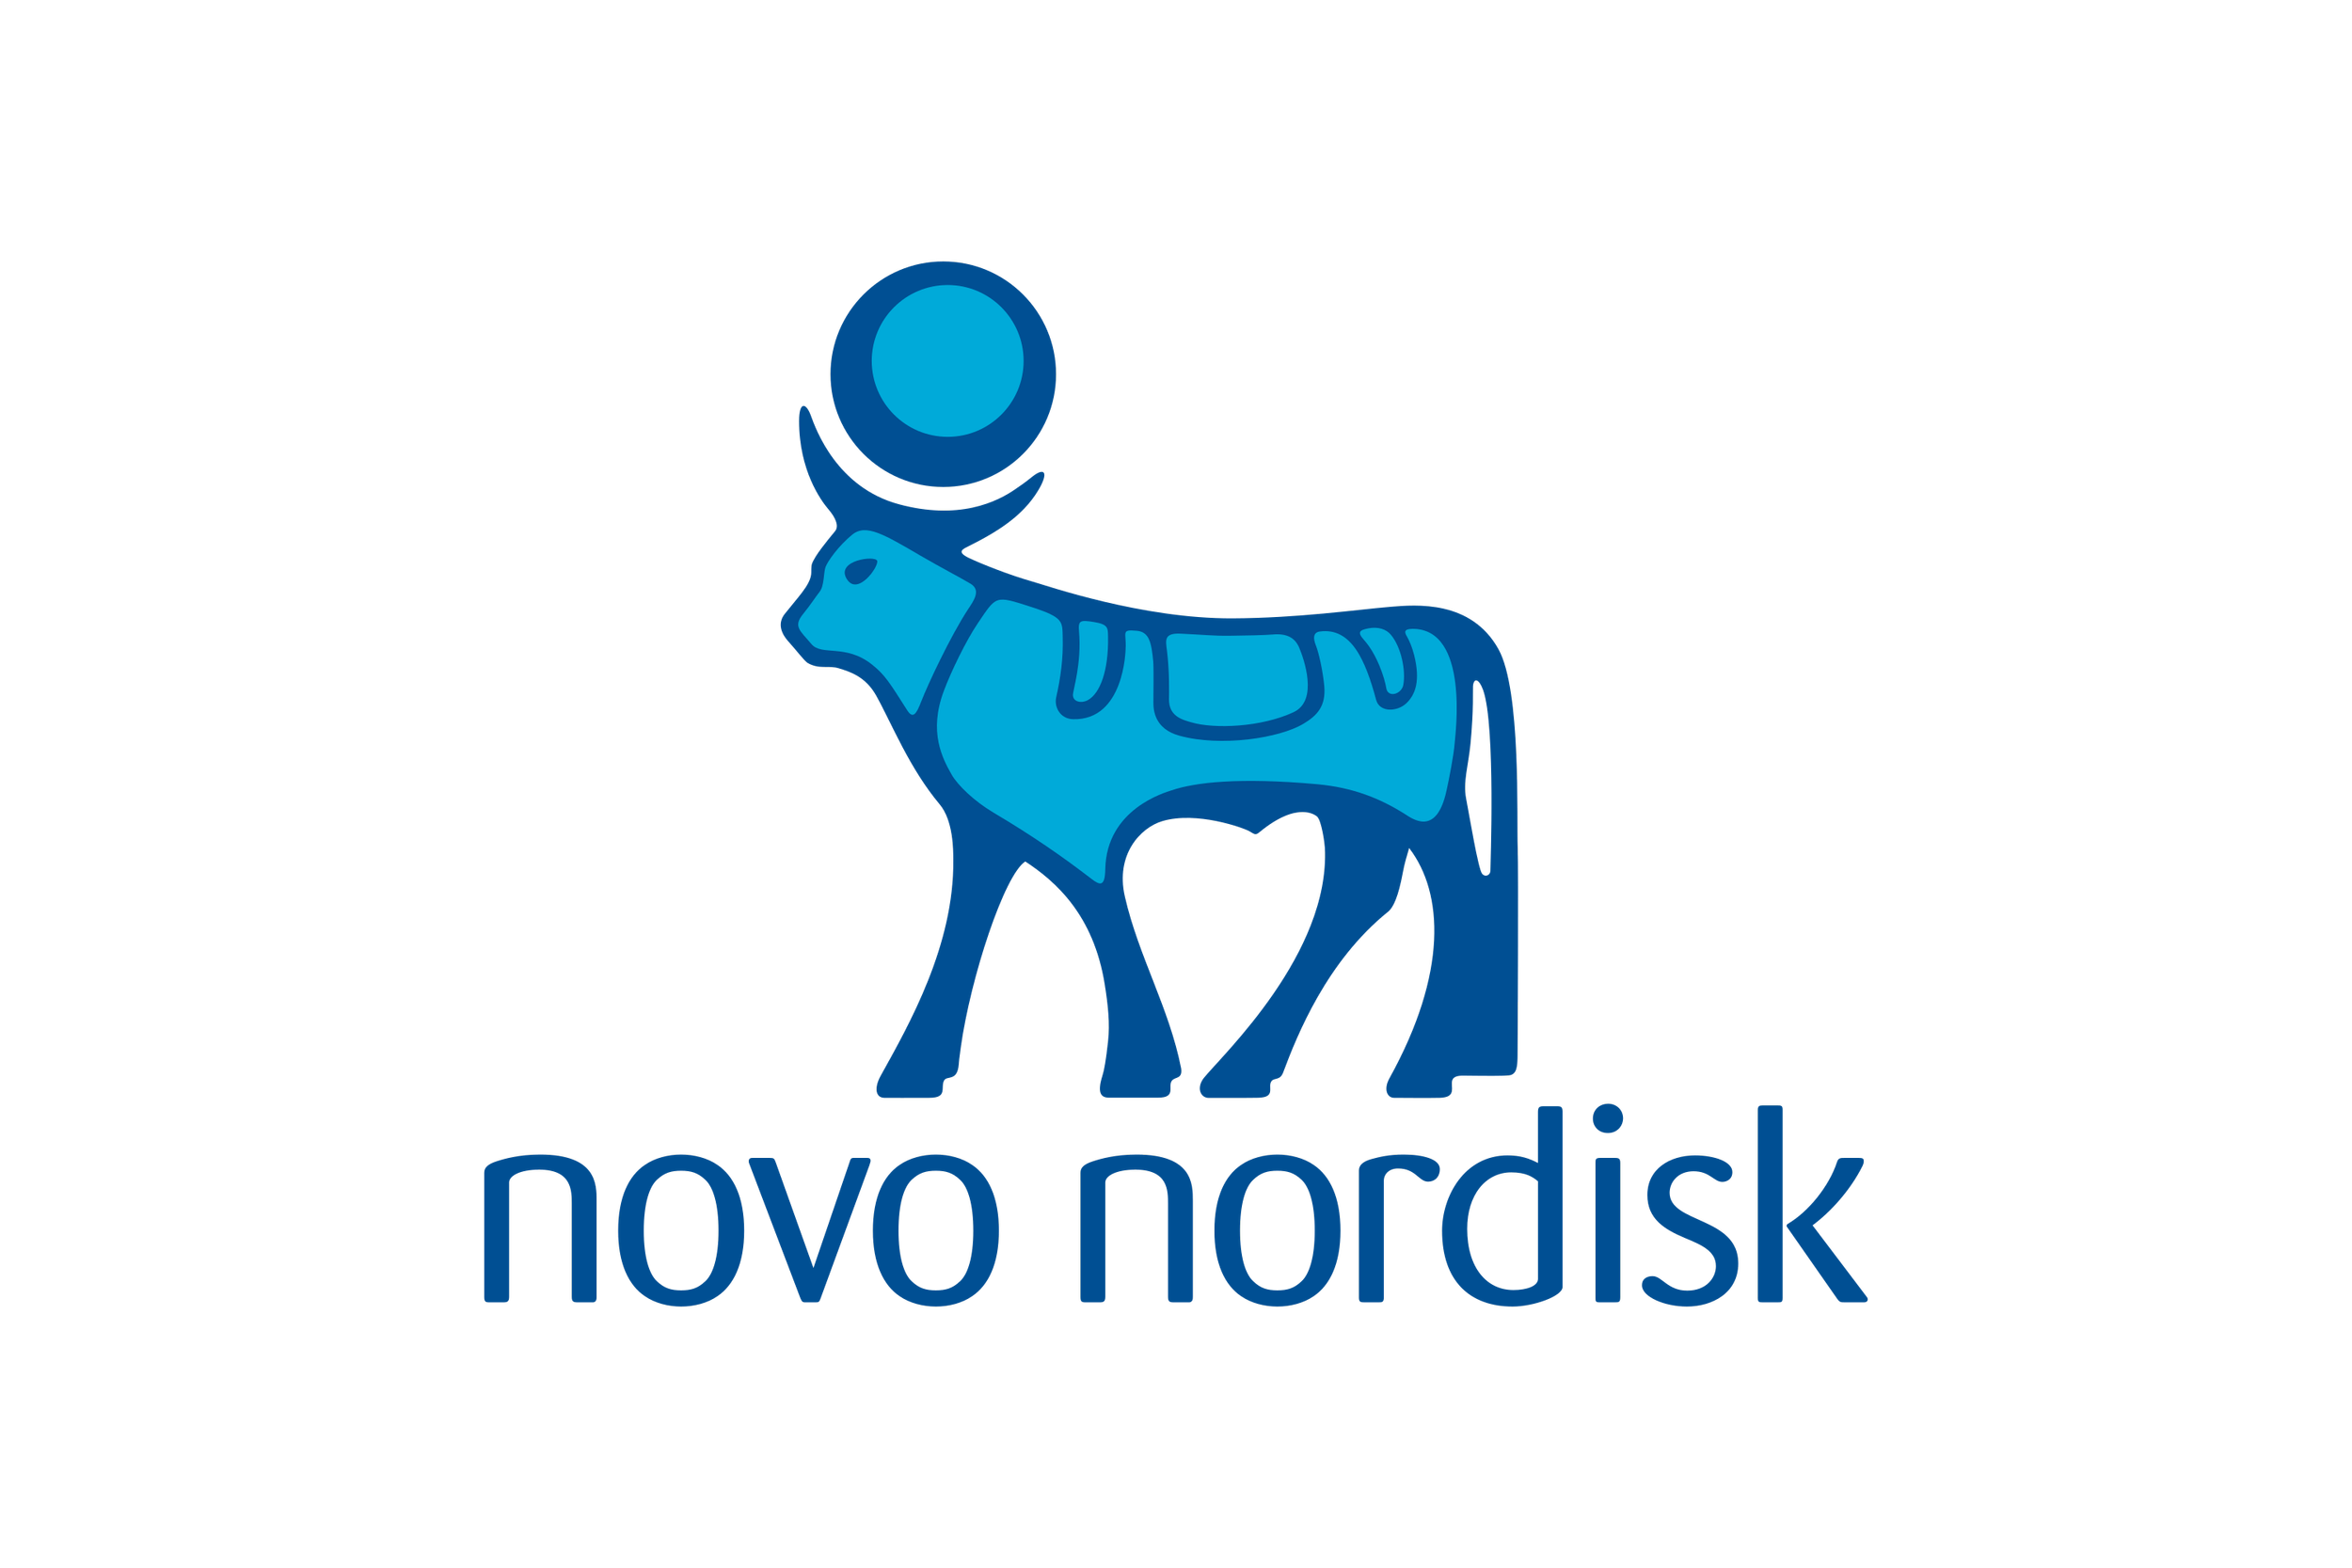 Novo_Nordisk-Logo.wine.png